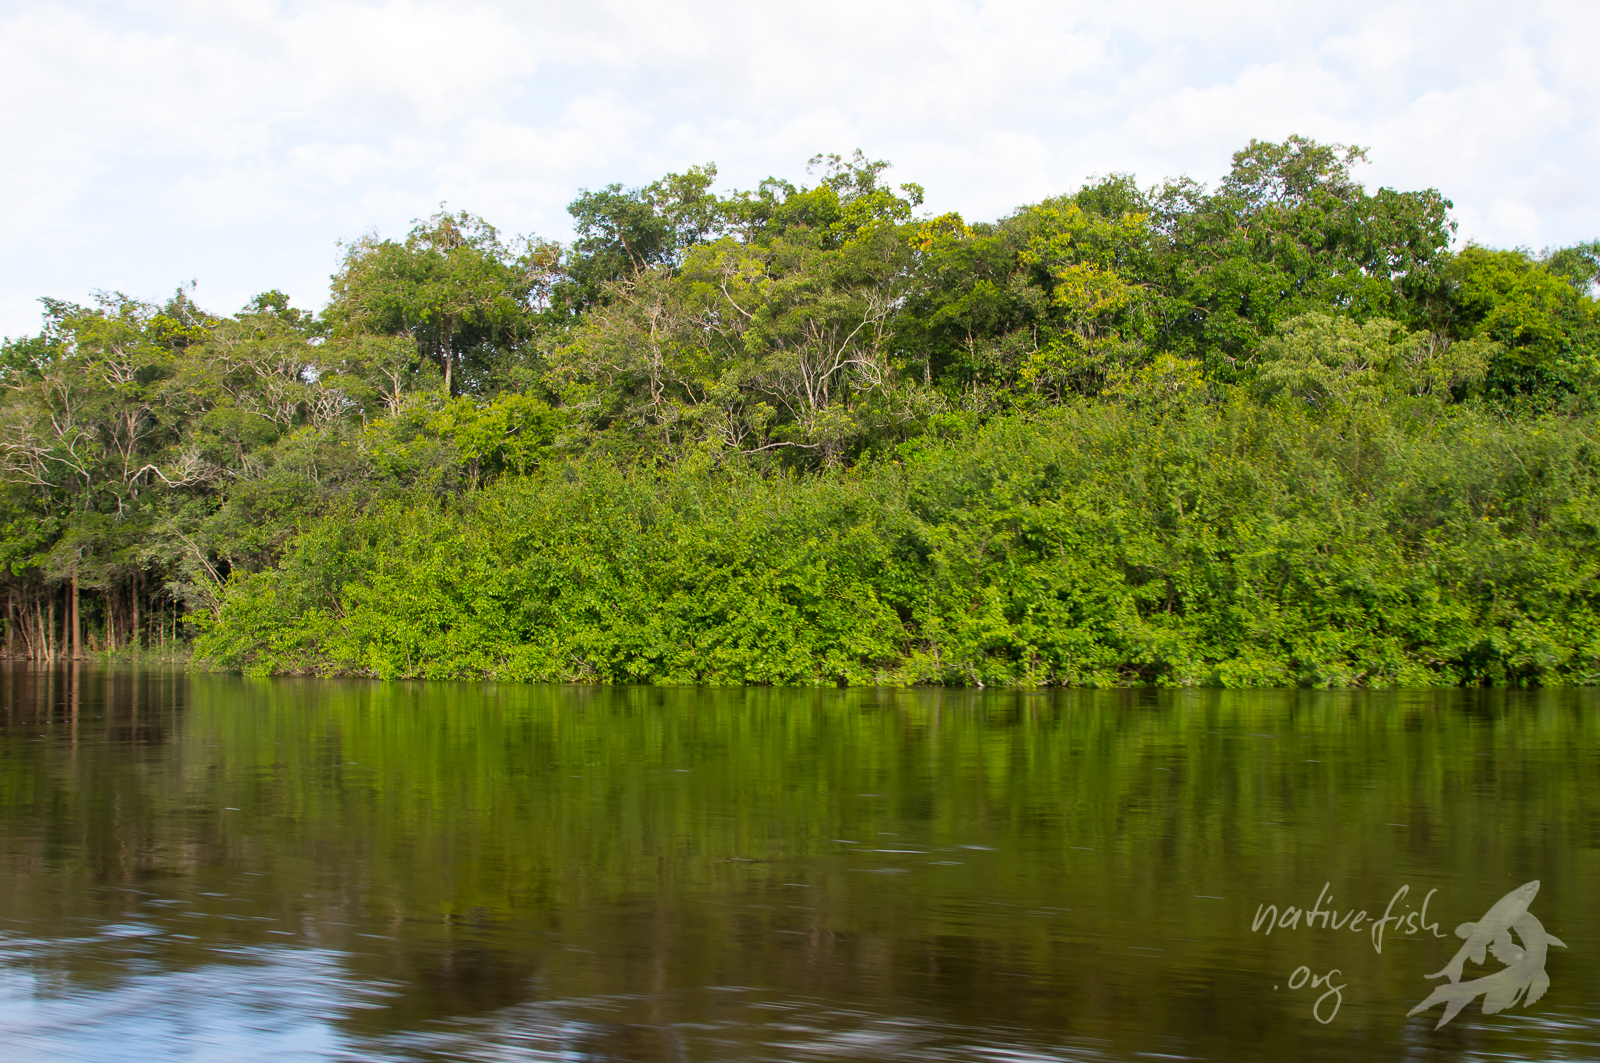 Ufer des Cano Bocon in Kolumbien. Bild Dr. Stefan K. Hetz